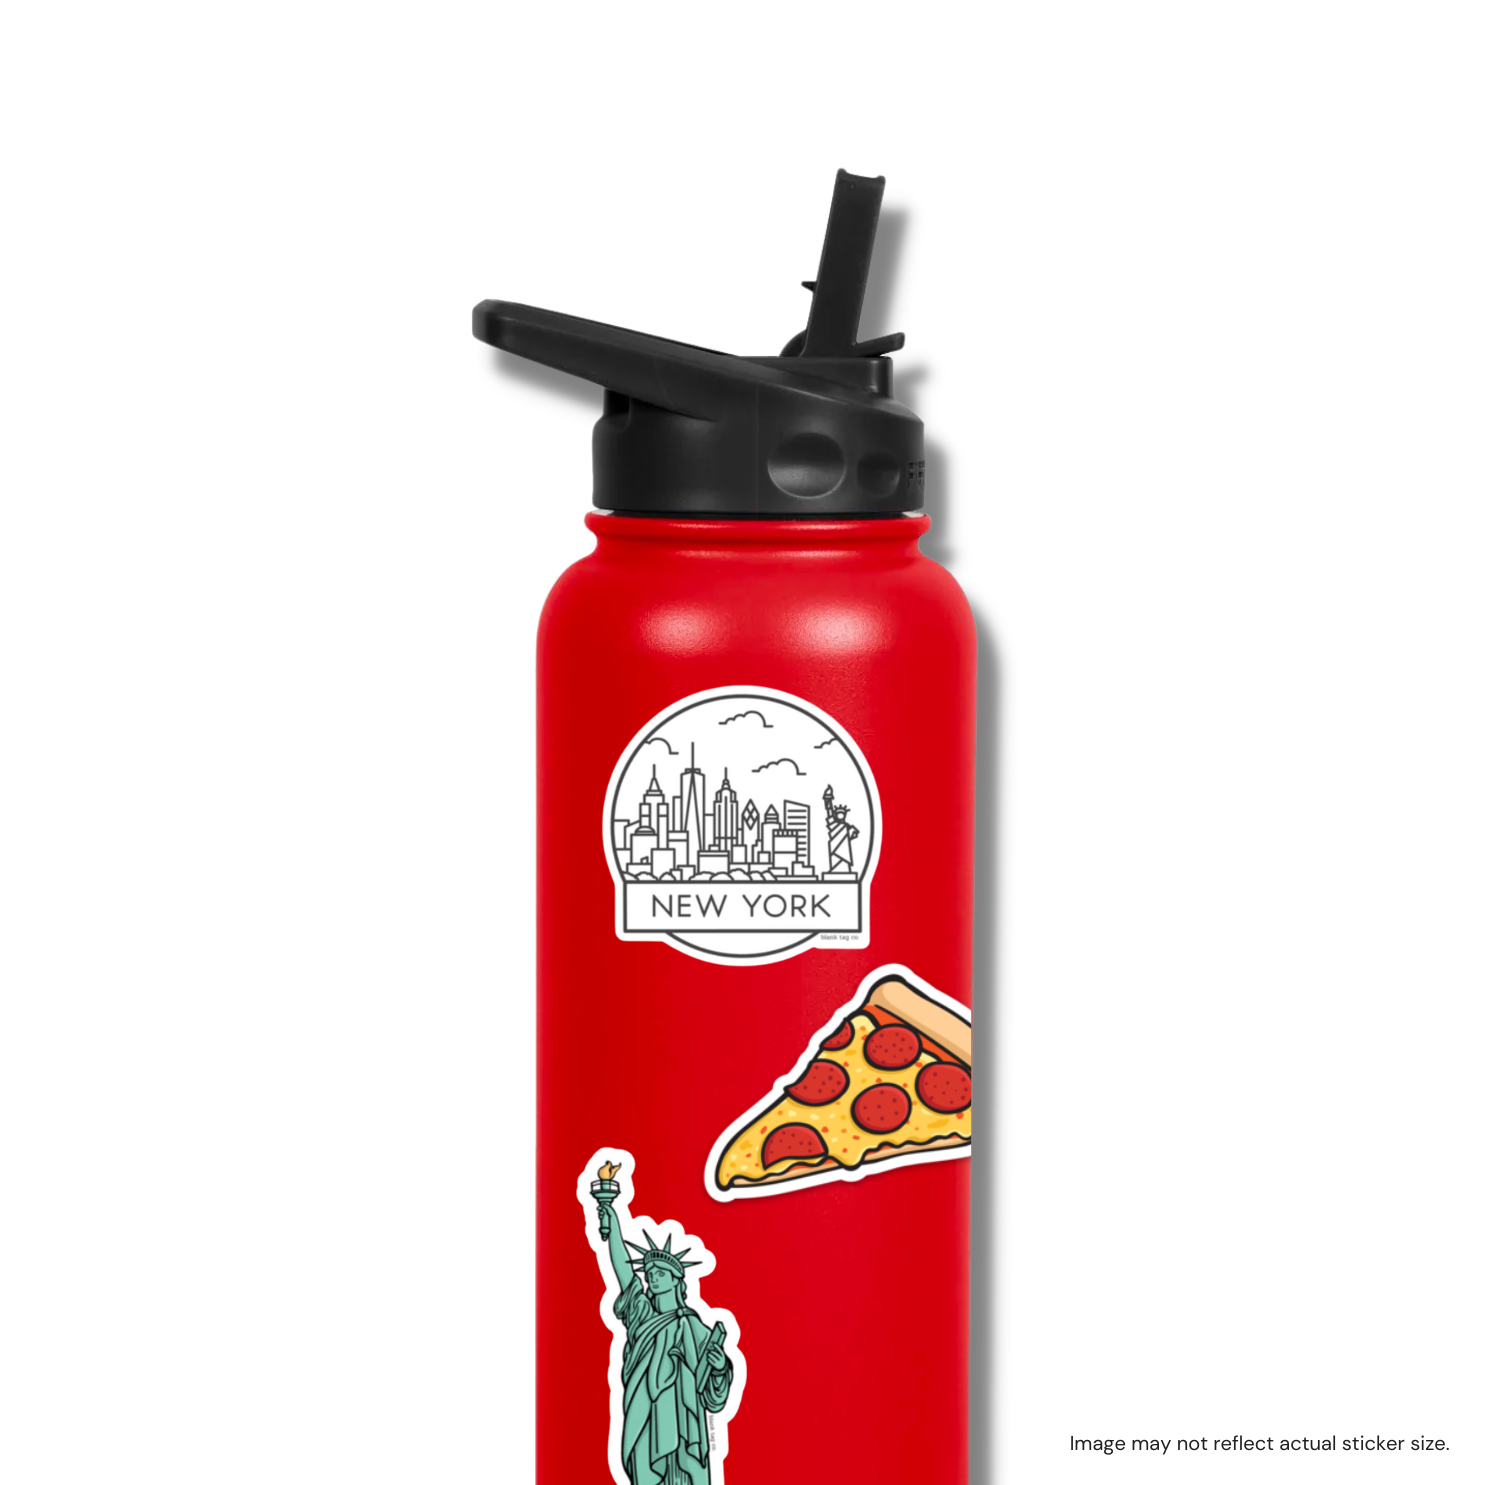 The Pepperoni Pizza Slice Sticker